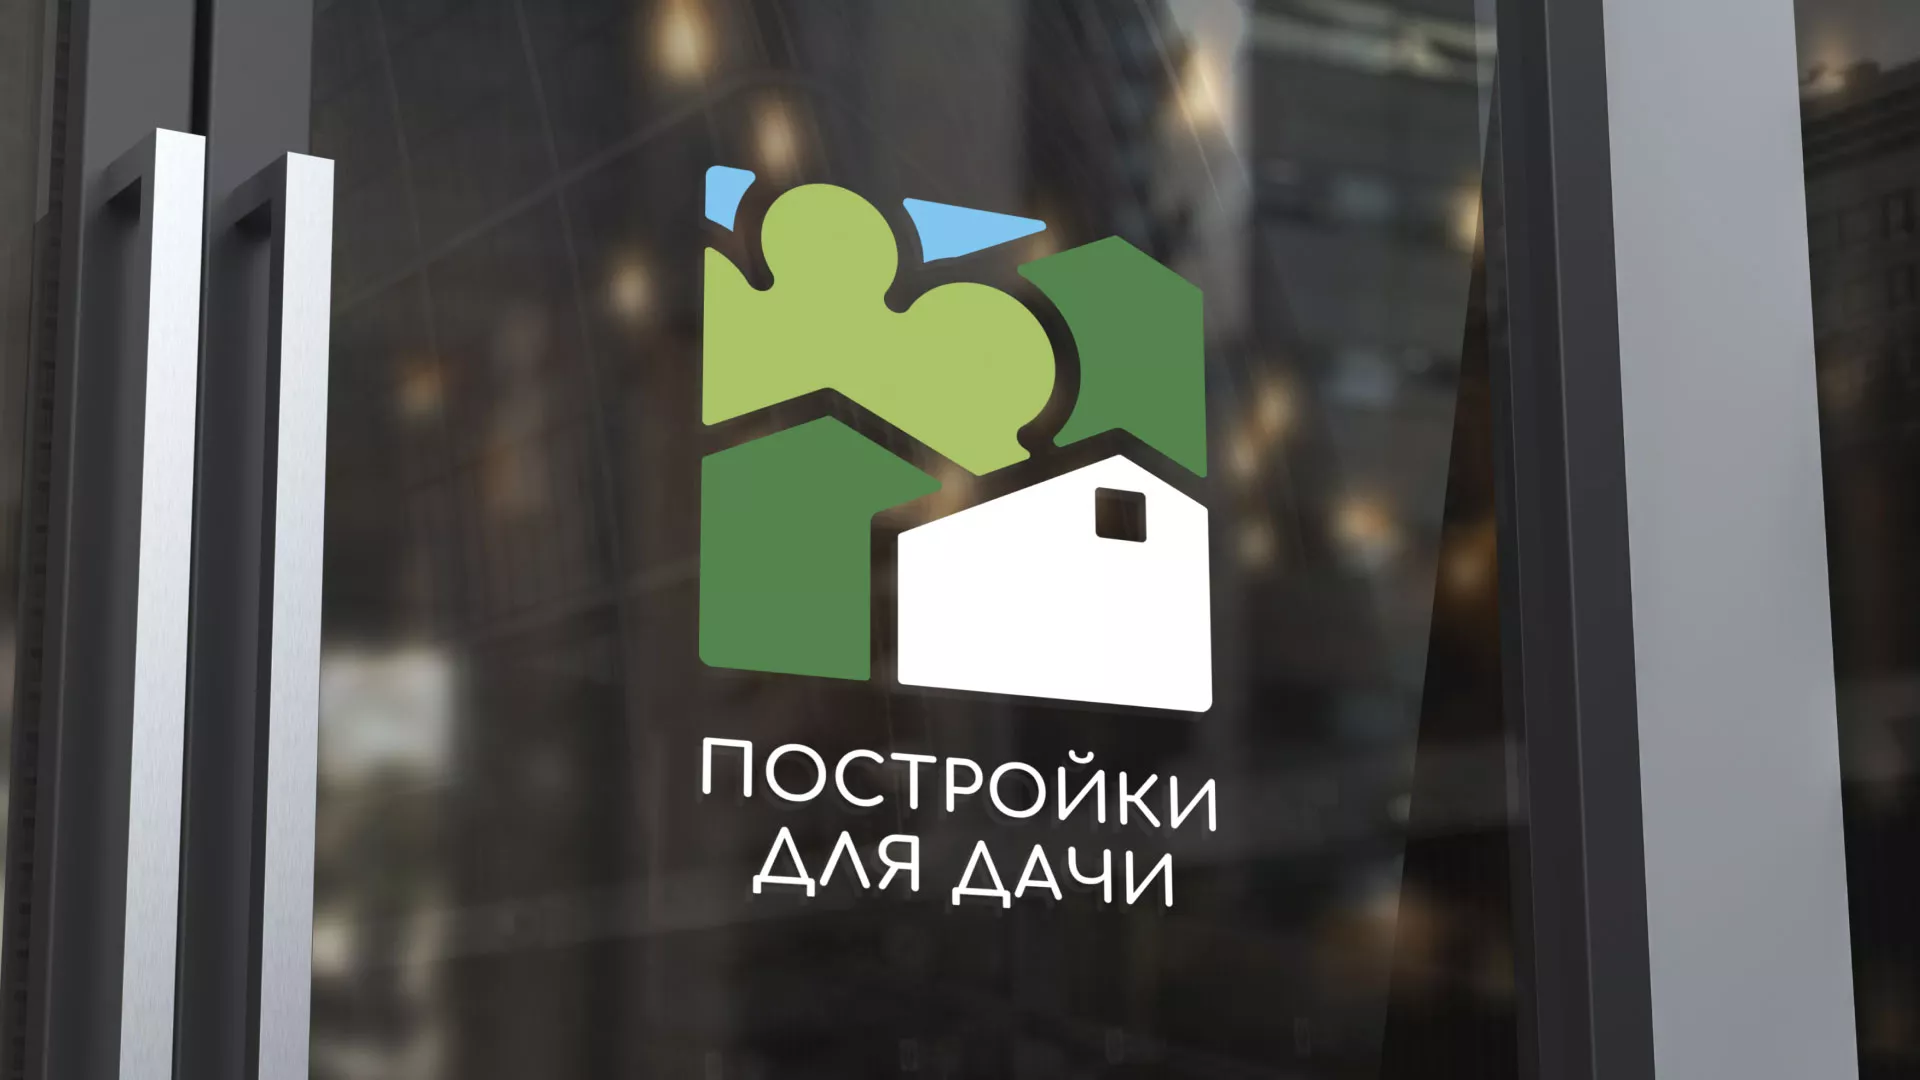 Разработка логотипа в Алексеевке для компании «Постройки для дачи»